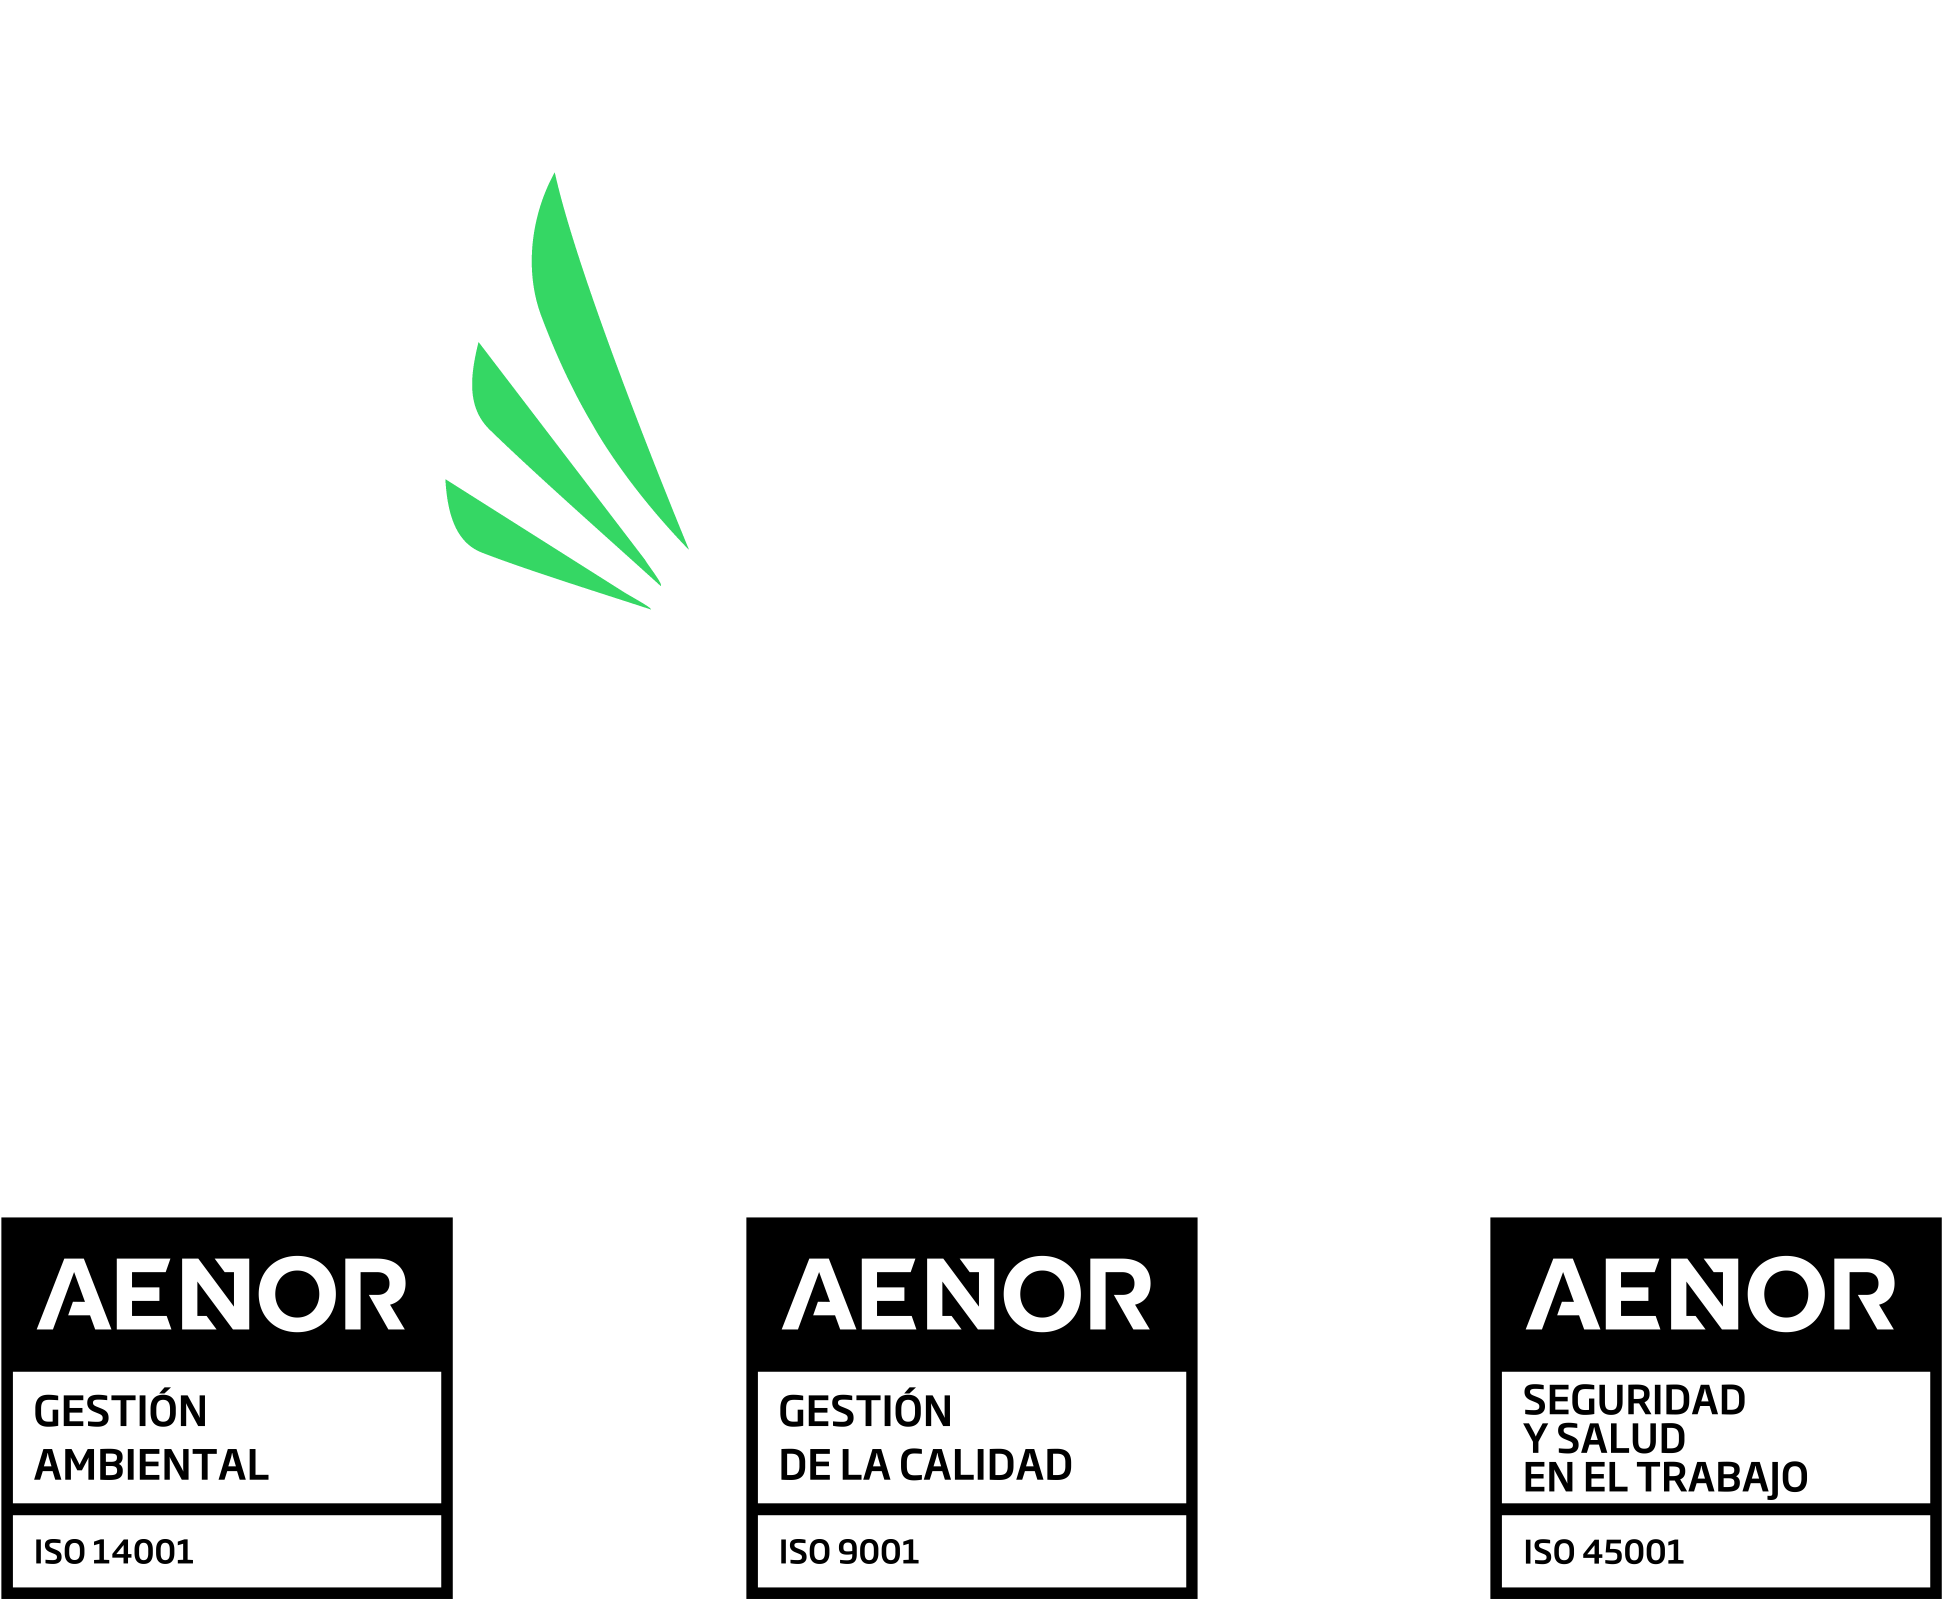 Descubra Soluciones Integrales con Bassein: Su Socio Confiable en Telecomunicaciones, Climatización, Anticaídas y Más. Expertos en Optimización Empresarial, Estamos Aquí para Impulsar Su Éxito.